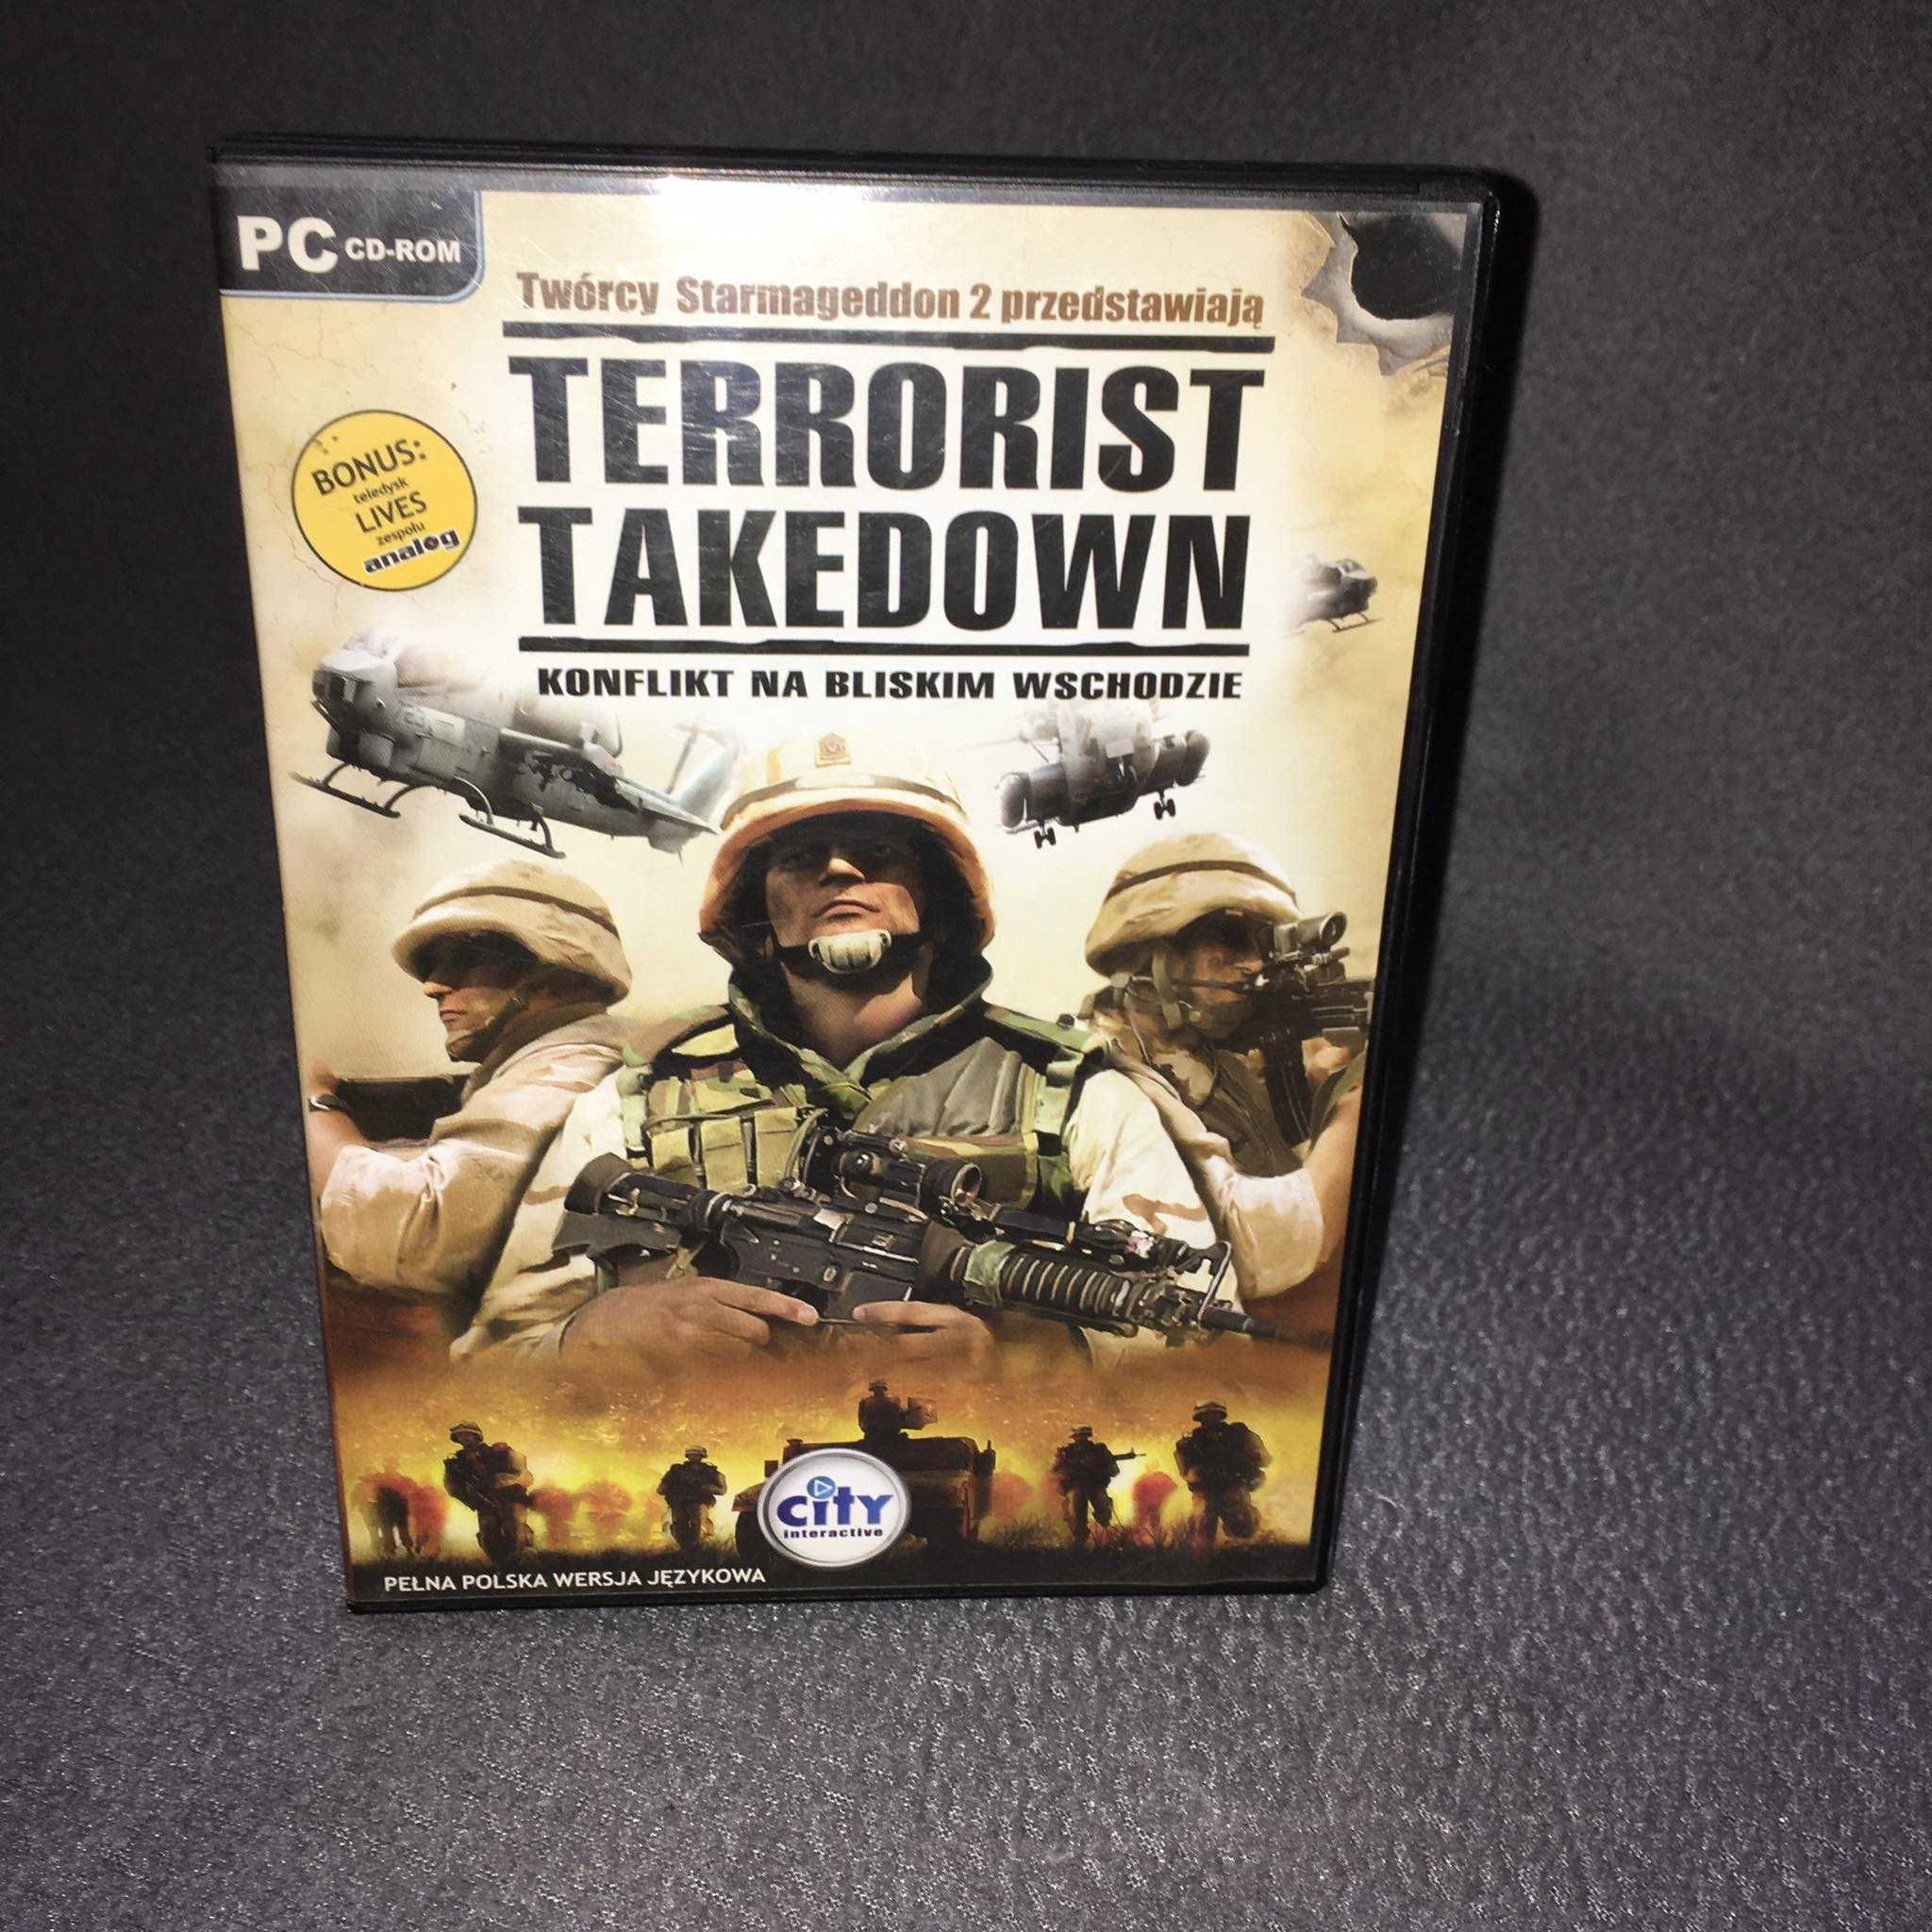 Terrorist Takedown-Konflikt na bliskim wschodzie